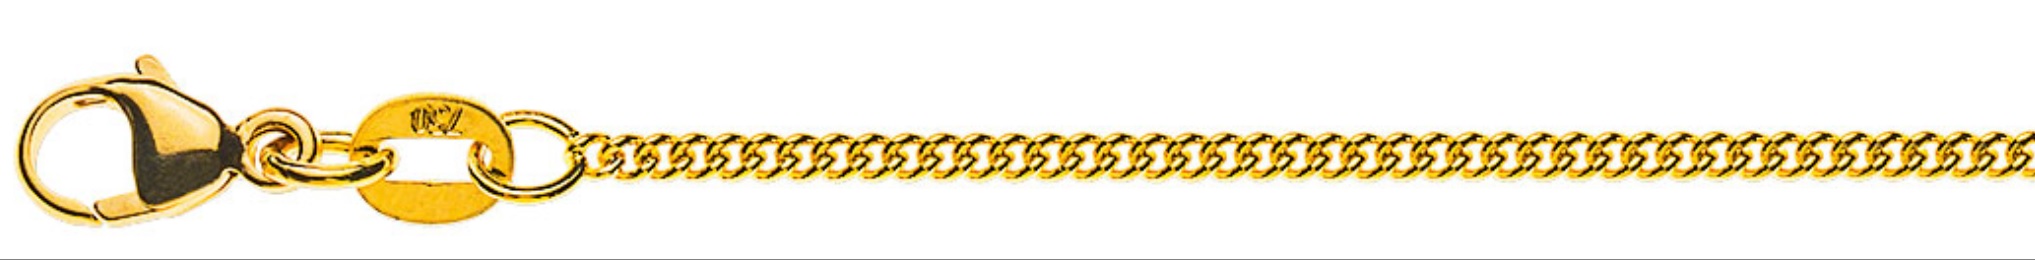 AURONOS Prestige Halskette Gelbgold 18K Rundpanzerkette 60cm 1.6mm